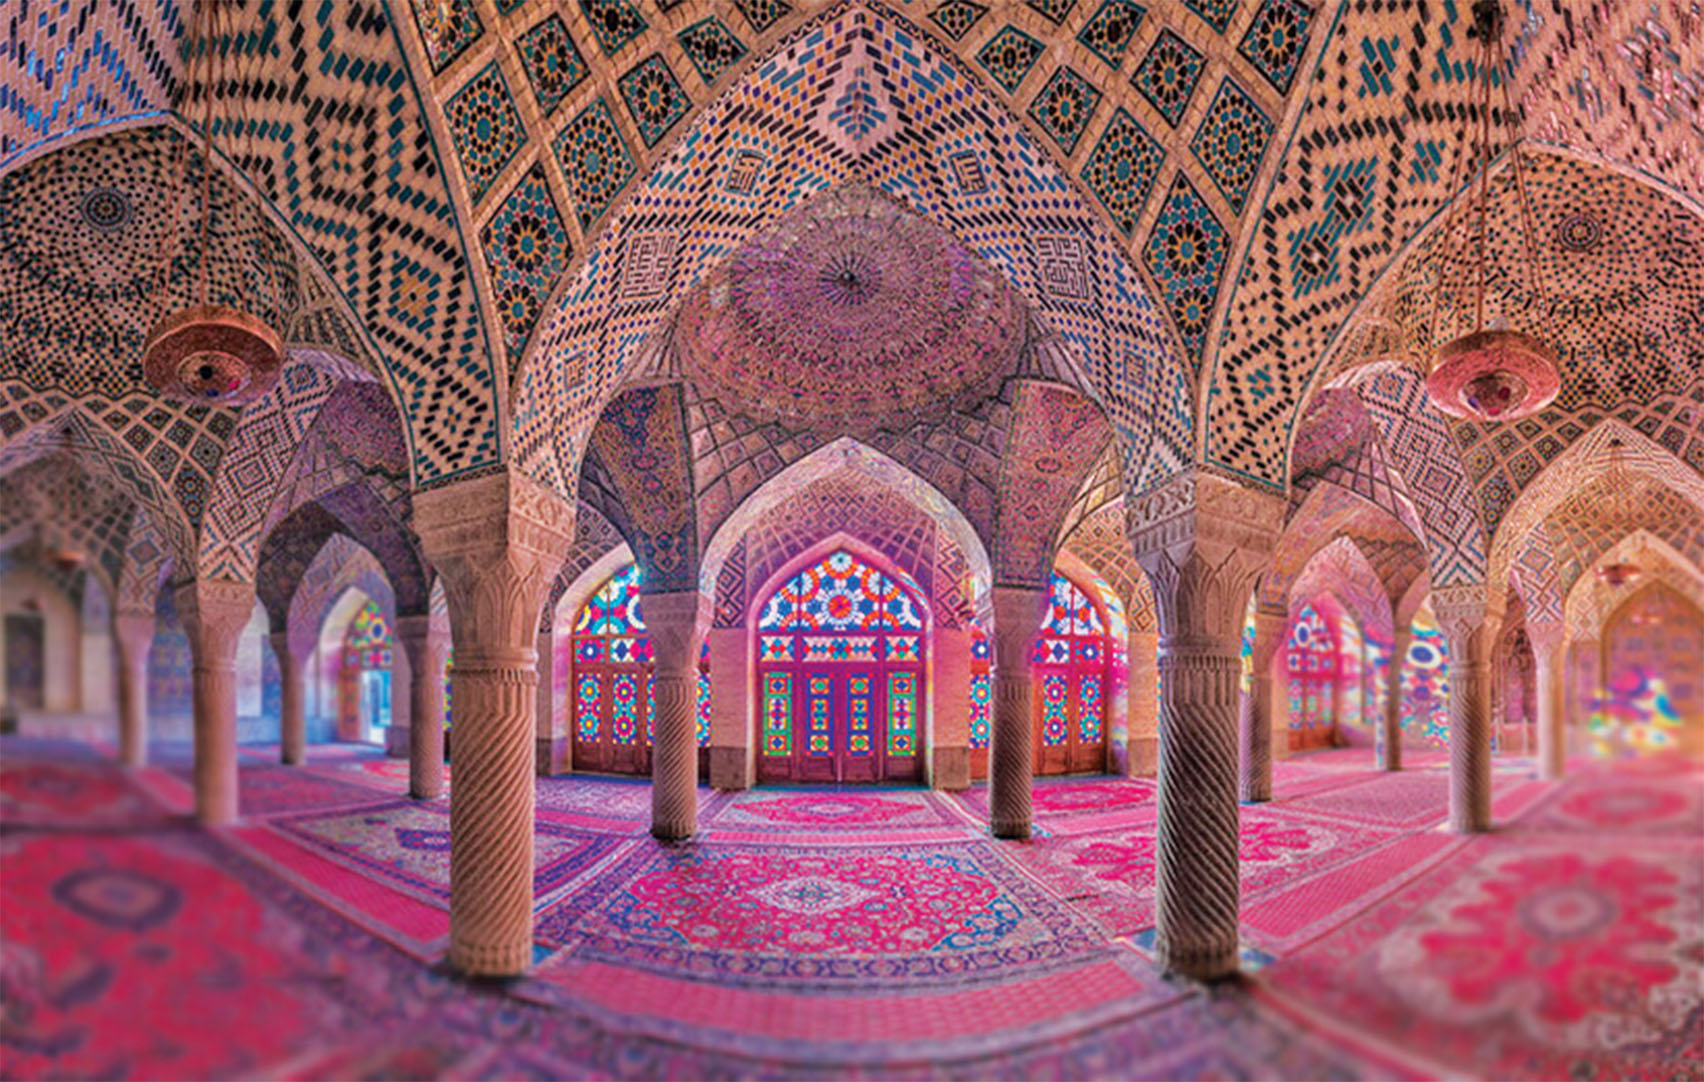 shiraz most beautiful cities in Iran, Shiraz le città più bella dell'Iran